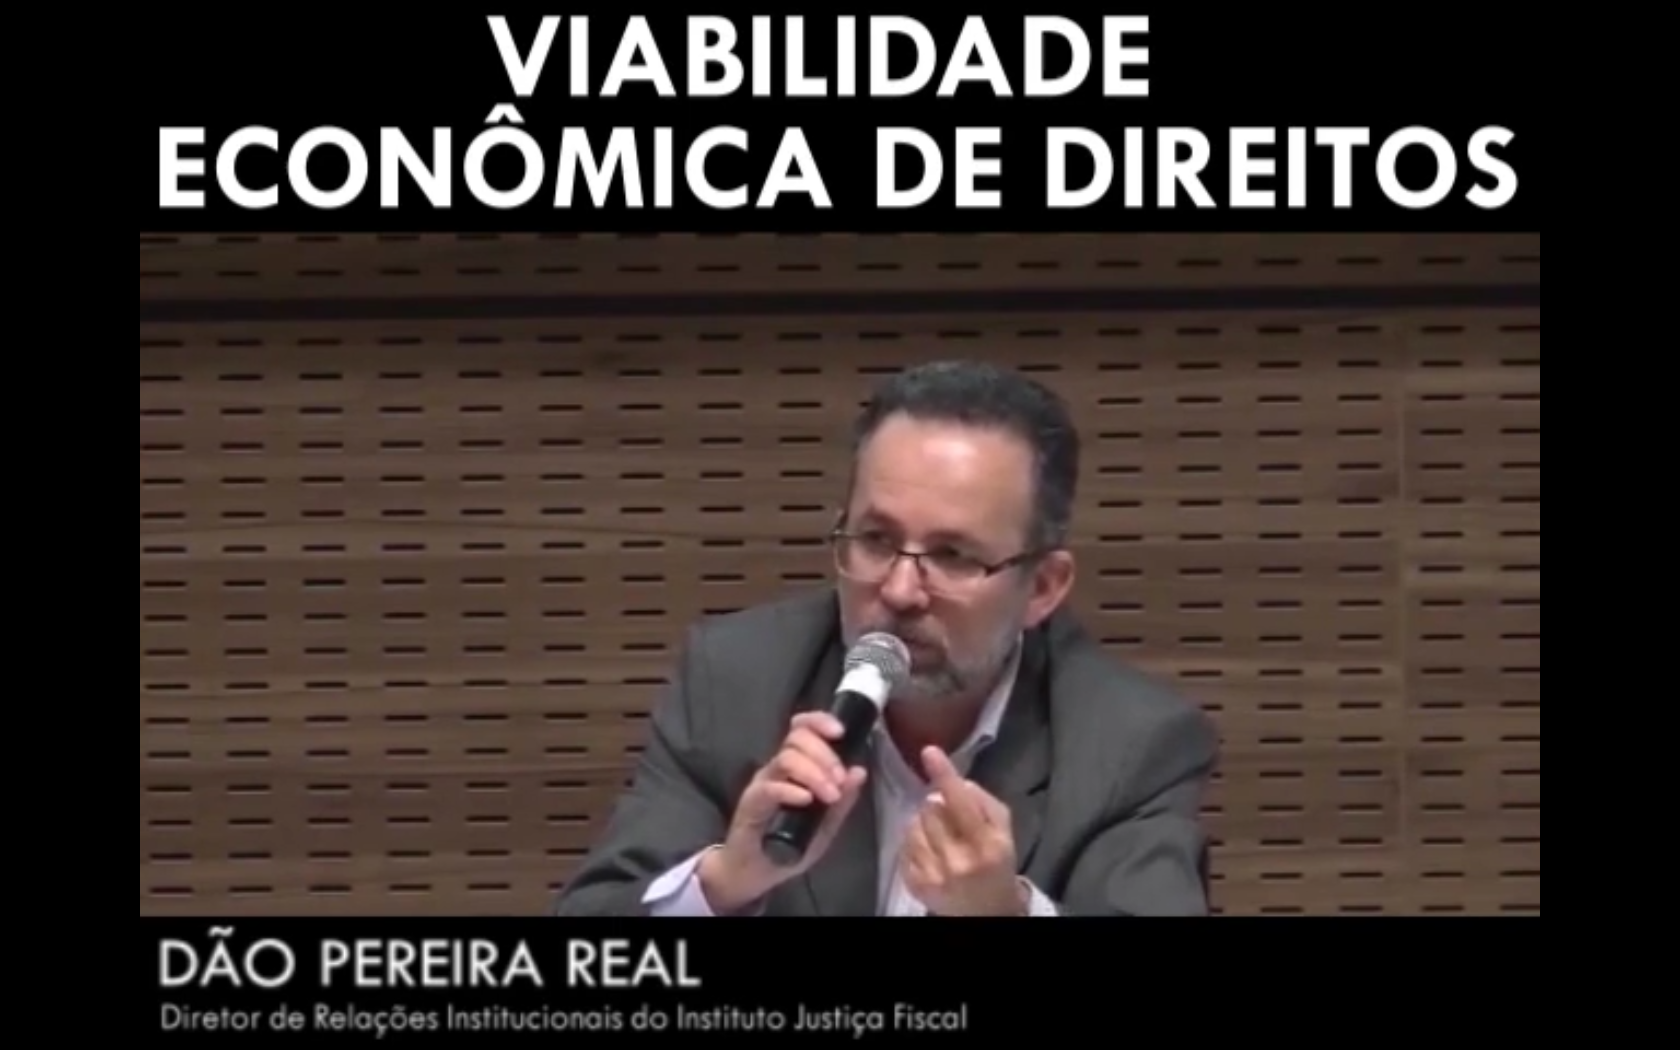 Viabilidade econômica de direitos - Dão Pereira Real